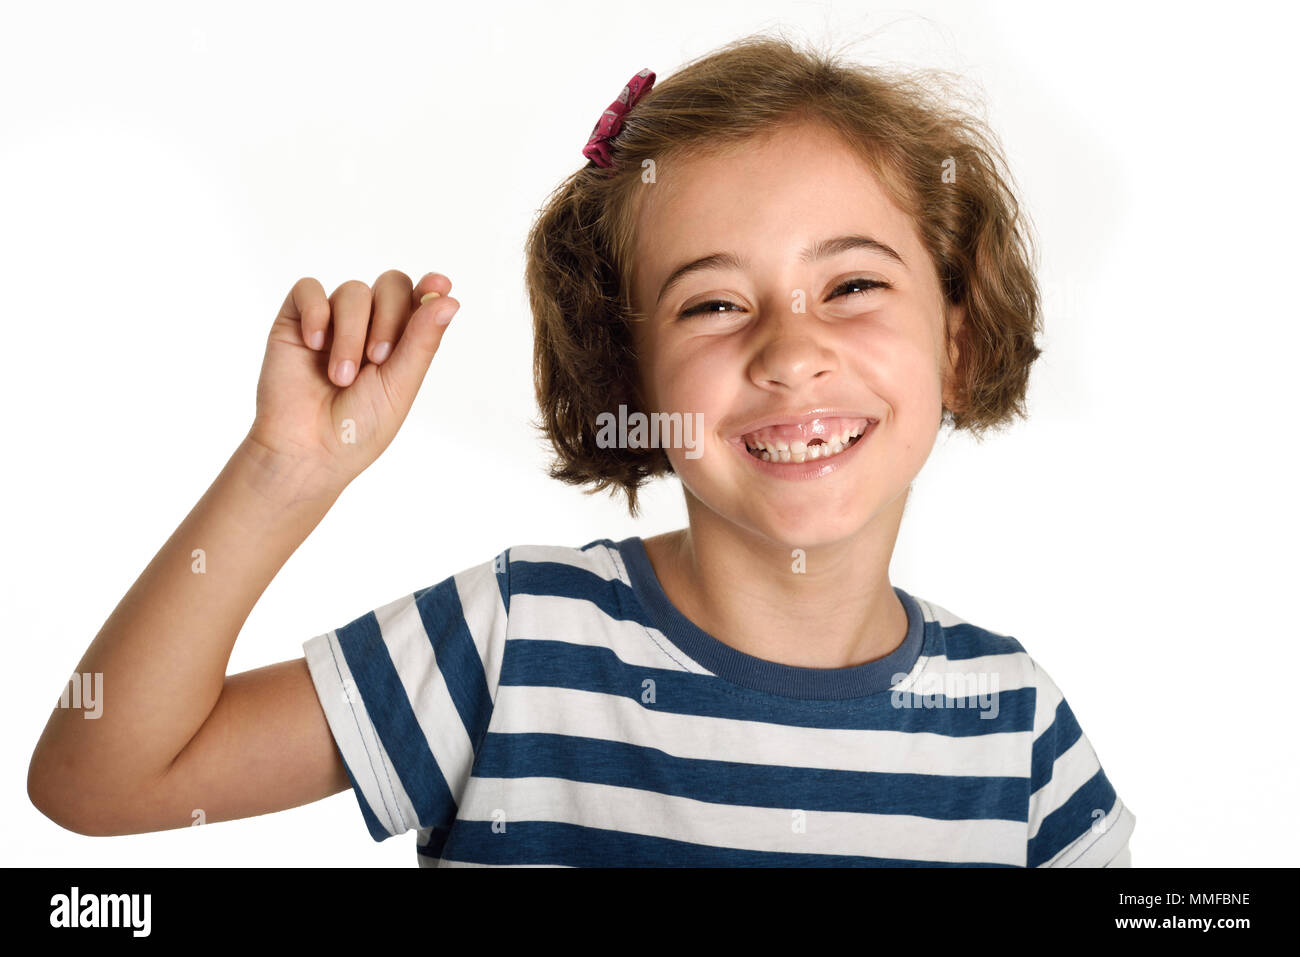 Glückliche kleine Mädchen ihren ersten gefallenen Zahnes angezeigt. Lächelnd kleine Frau mit einem schneidezahn in ihrer Hand. Isoliert auf weißem Hintergrund. Studio gedreht. Stockfoto